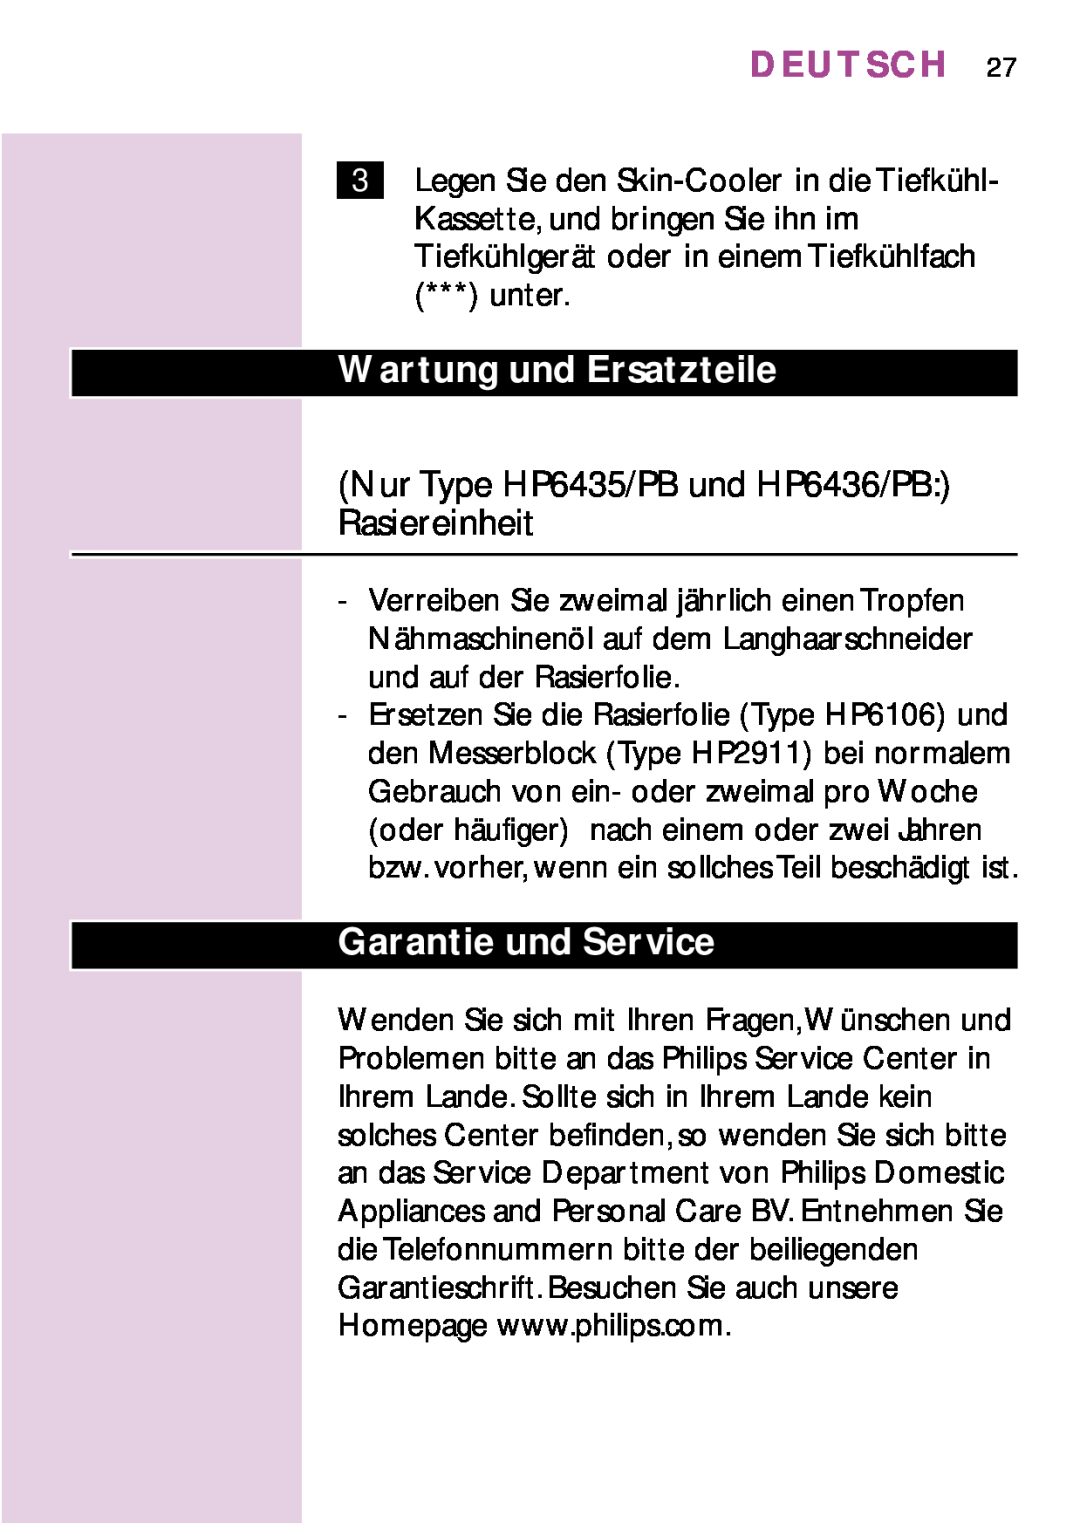 Philips HP6479, PB3 Wartung und Ersatzteile, Nur Type HP6435/PB und HP6436/PB Rasiereinheit, Garantie und Service, Deutsch 